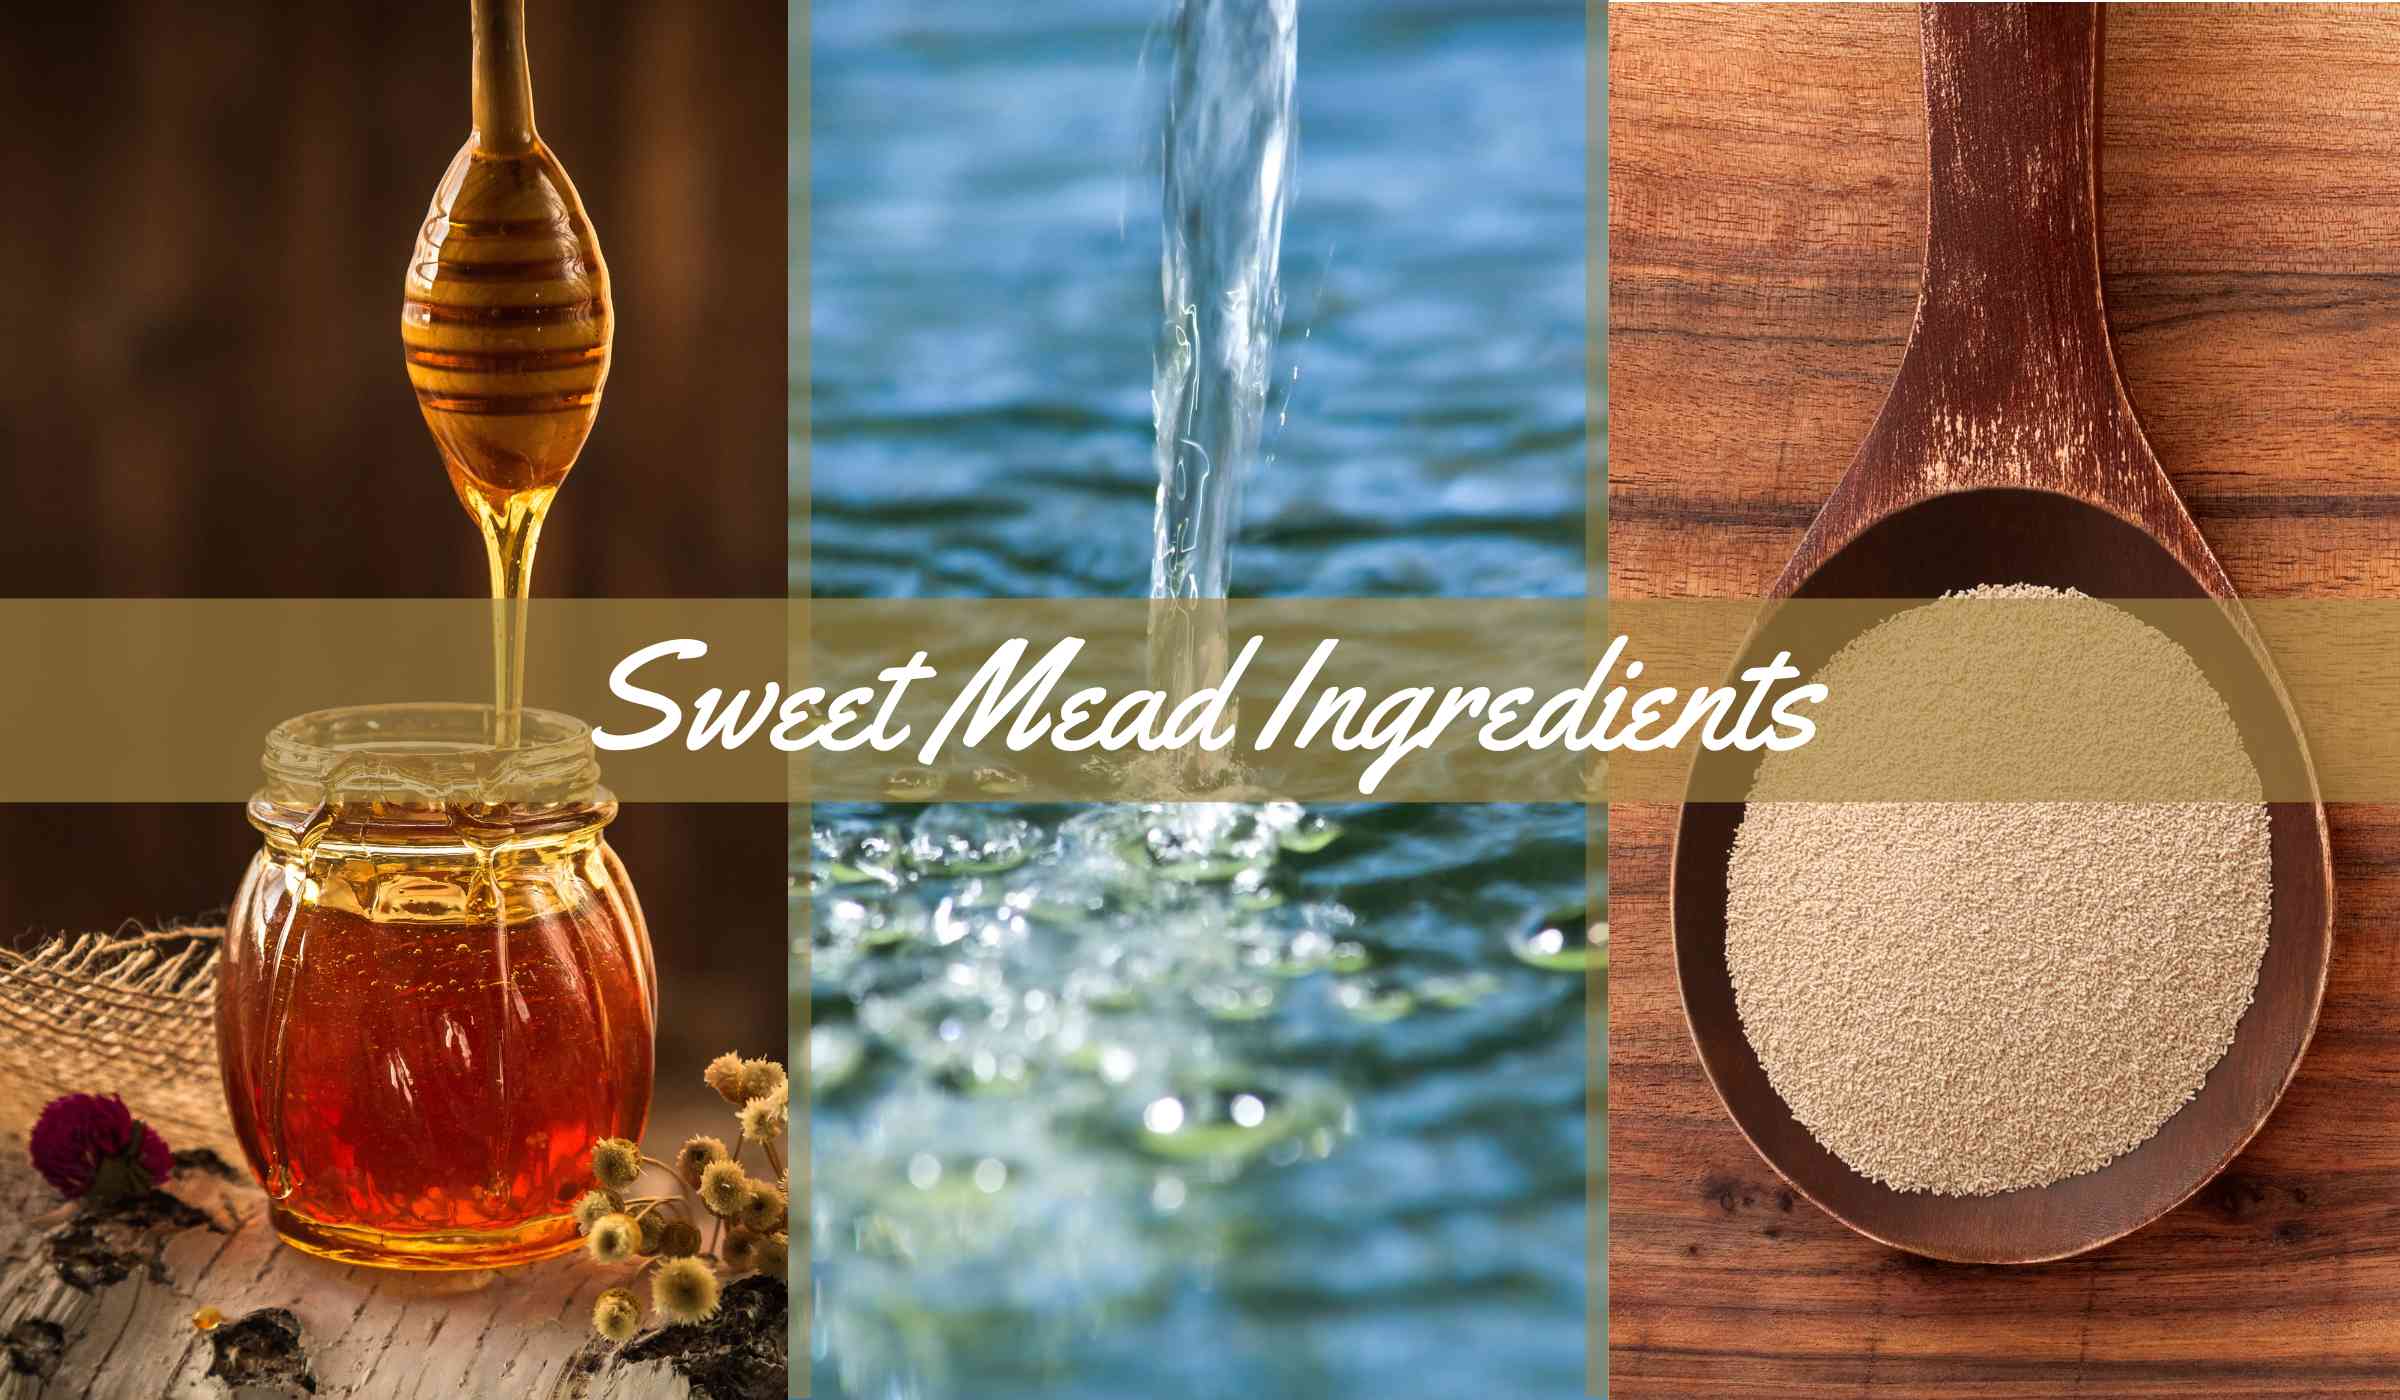 Sweet Mead Ingredients